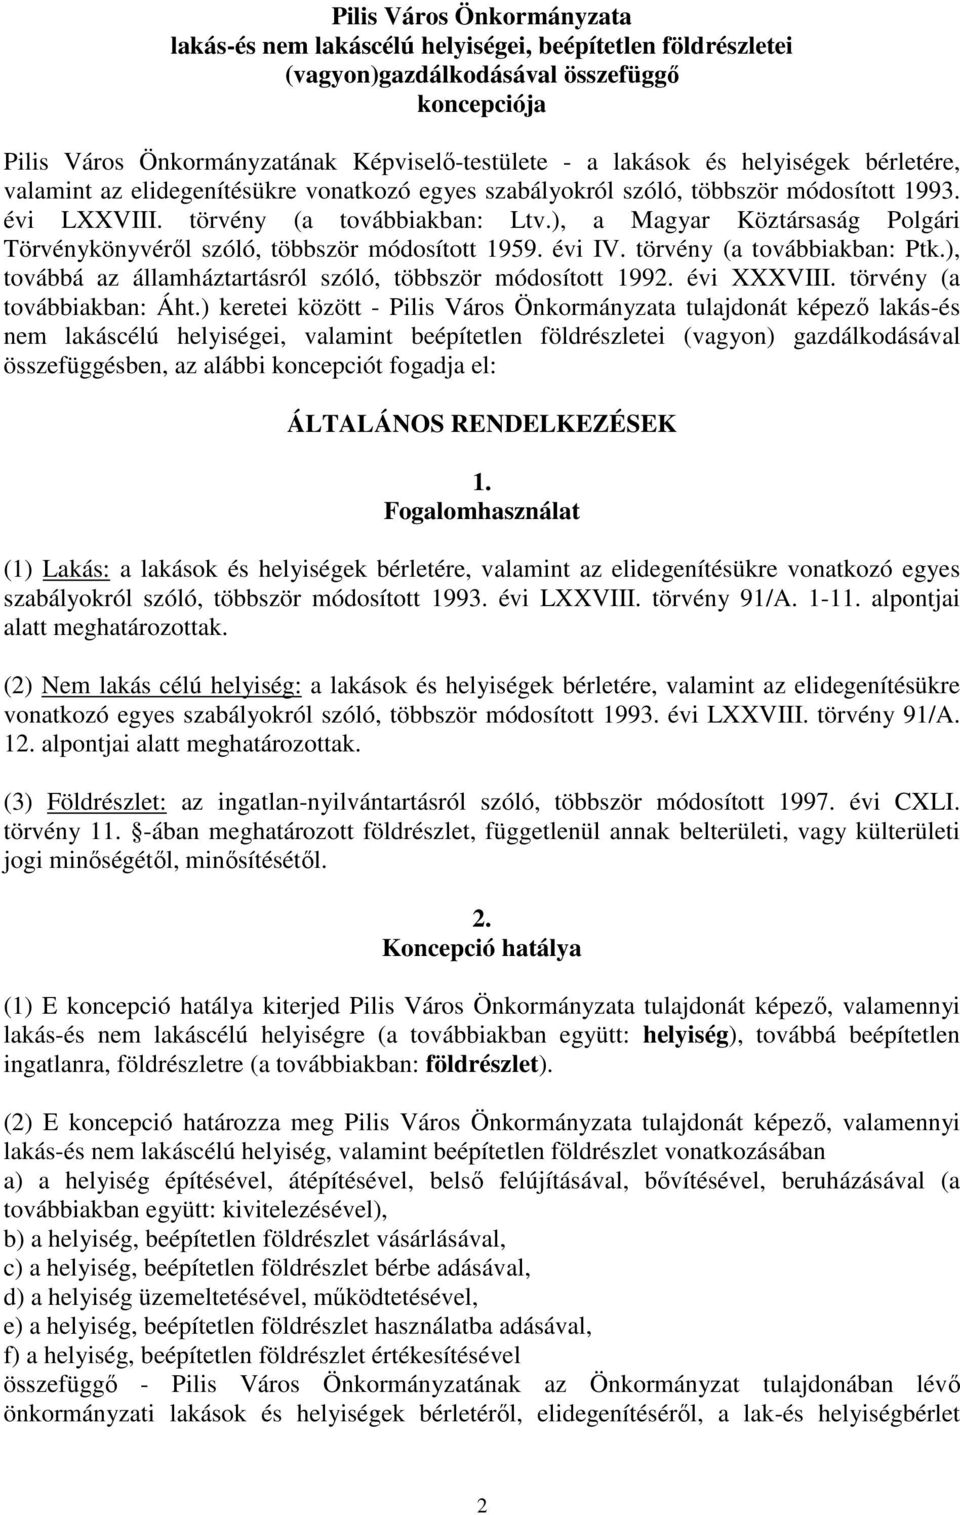 ), a Magyar Köztársaság Polgári Törvénykönyvérıl szóló, többször módosított 1959. évi IV. törvény (a továbbiakban: Ptk.), továbbá az államháztartásról szóló, többször módosított 1992. évi XXXVIII.